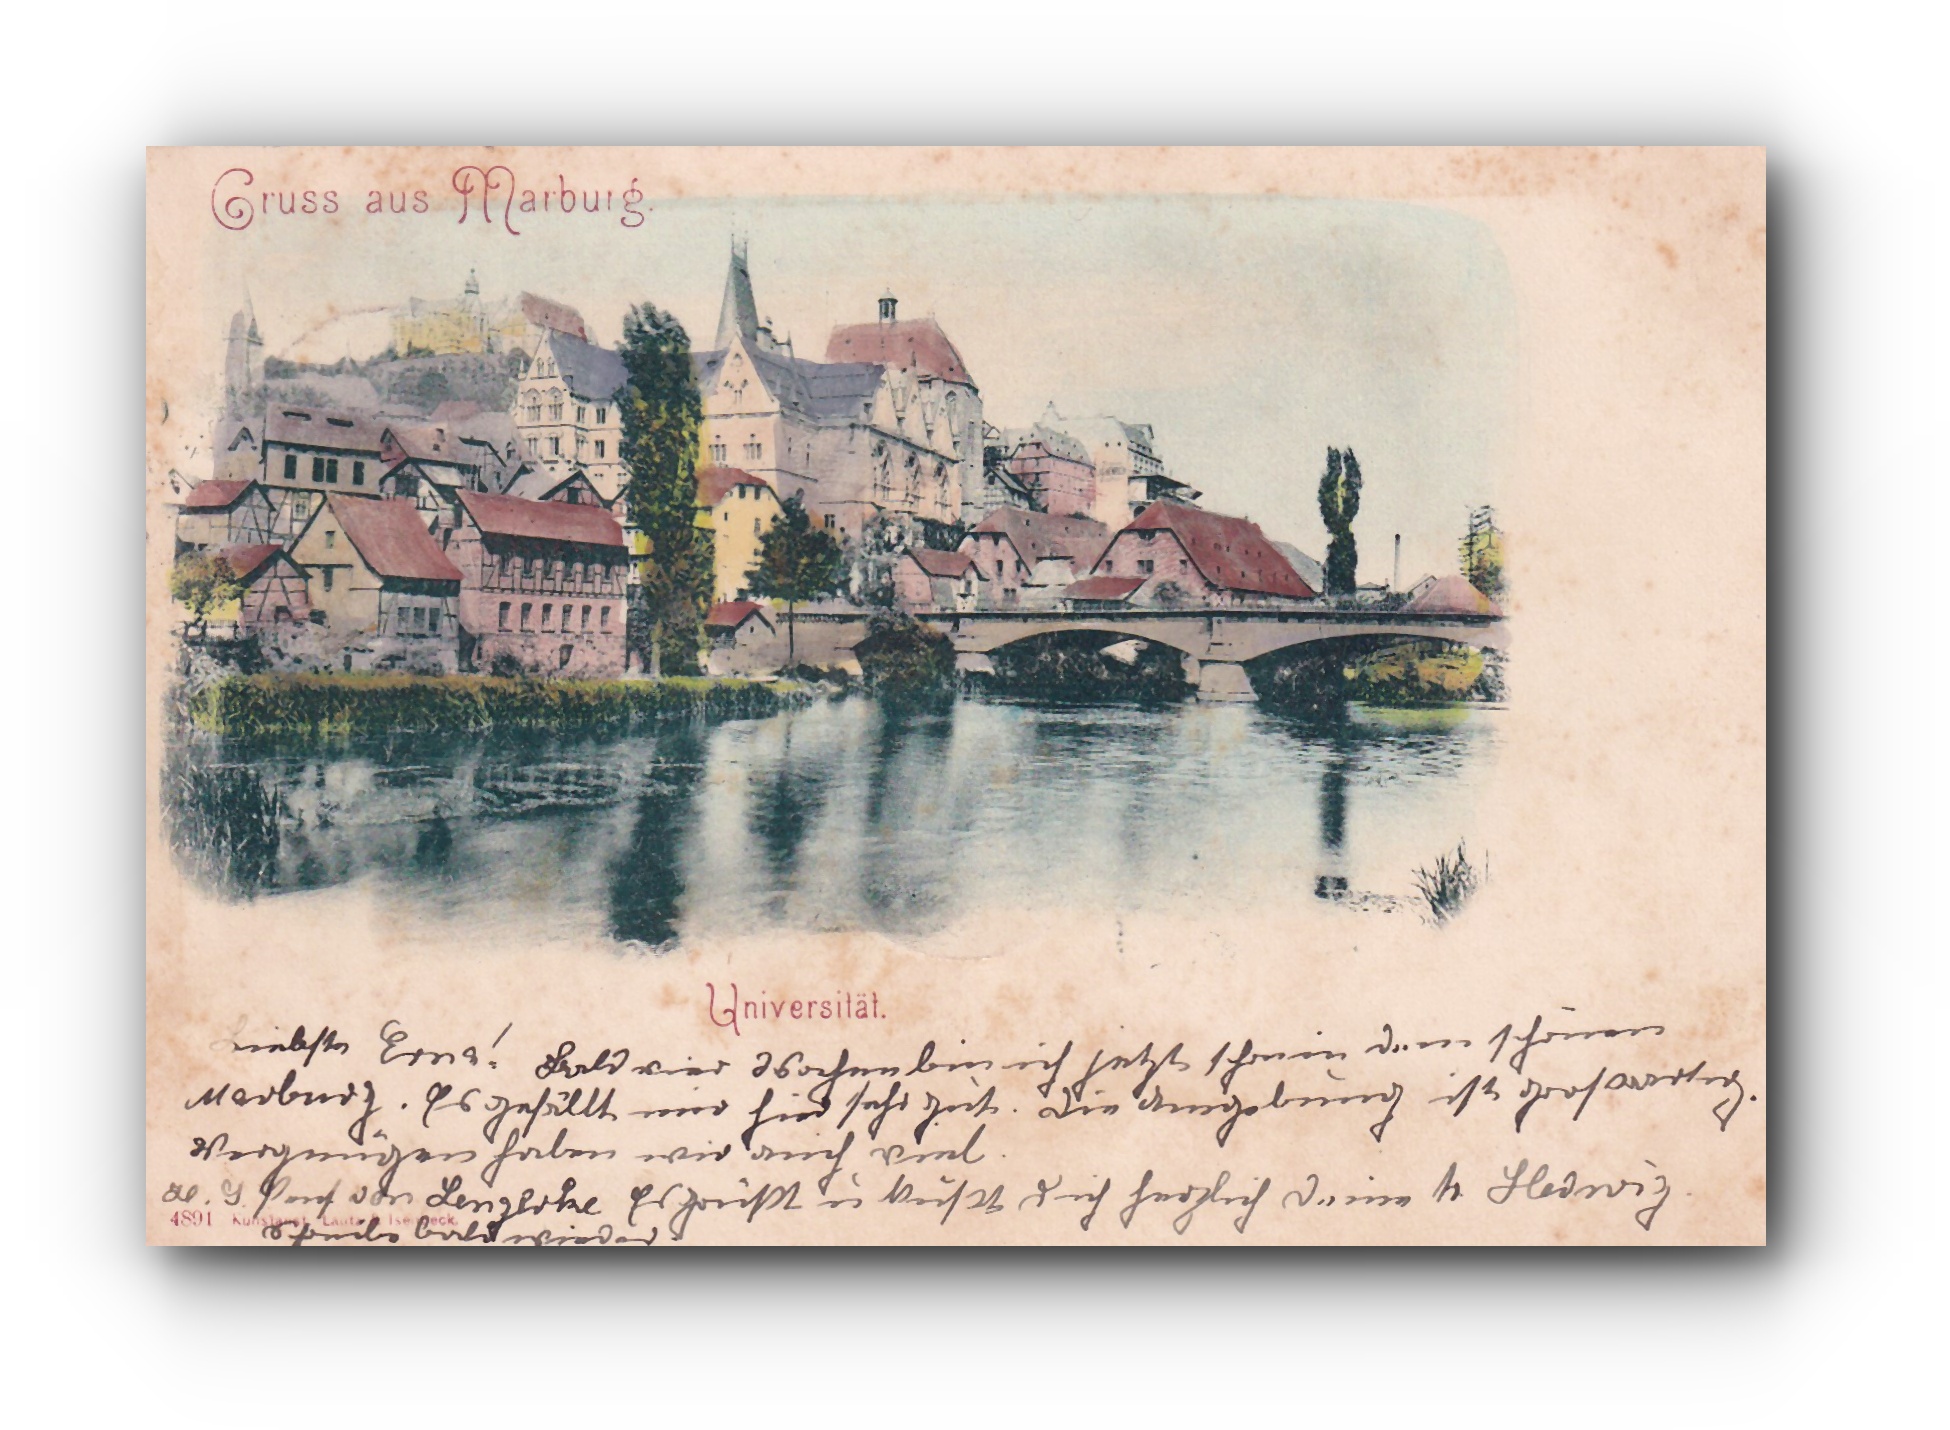 - Gruss aus MARBURG - Universität - 29.05.1899 -